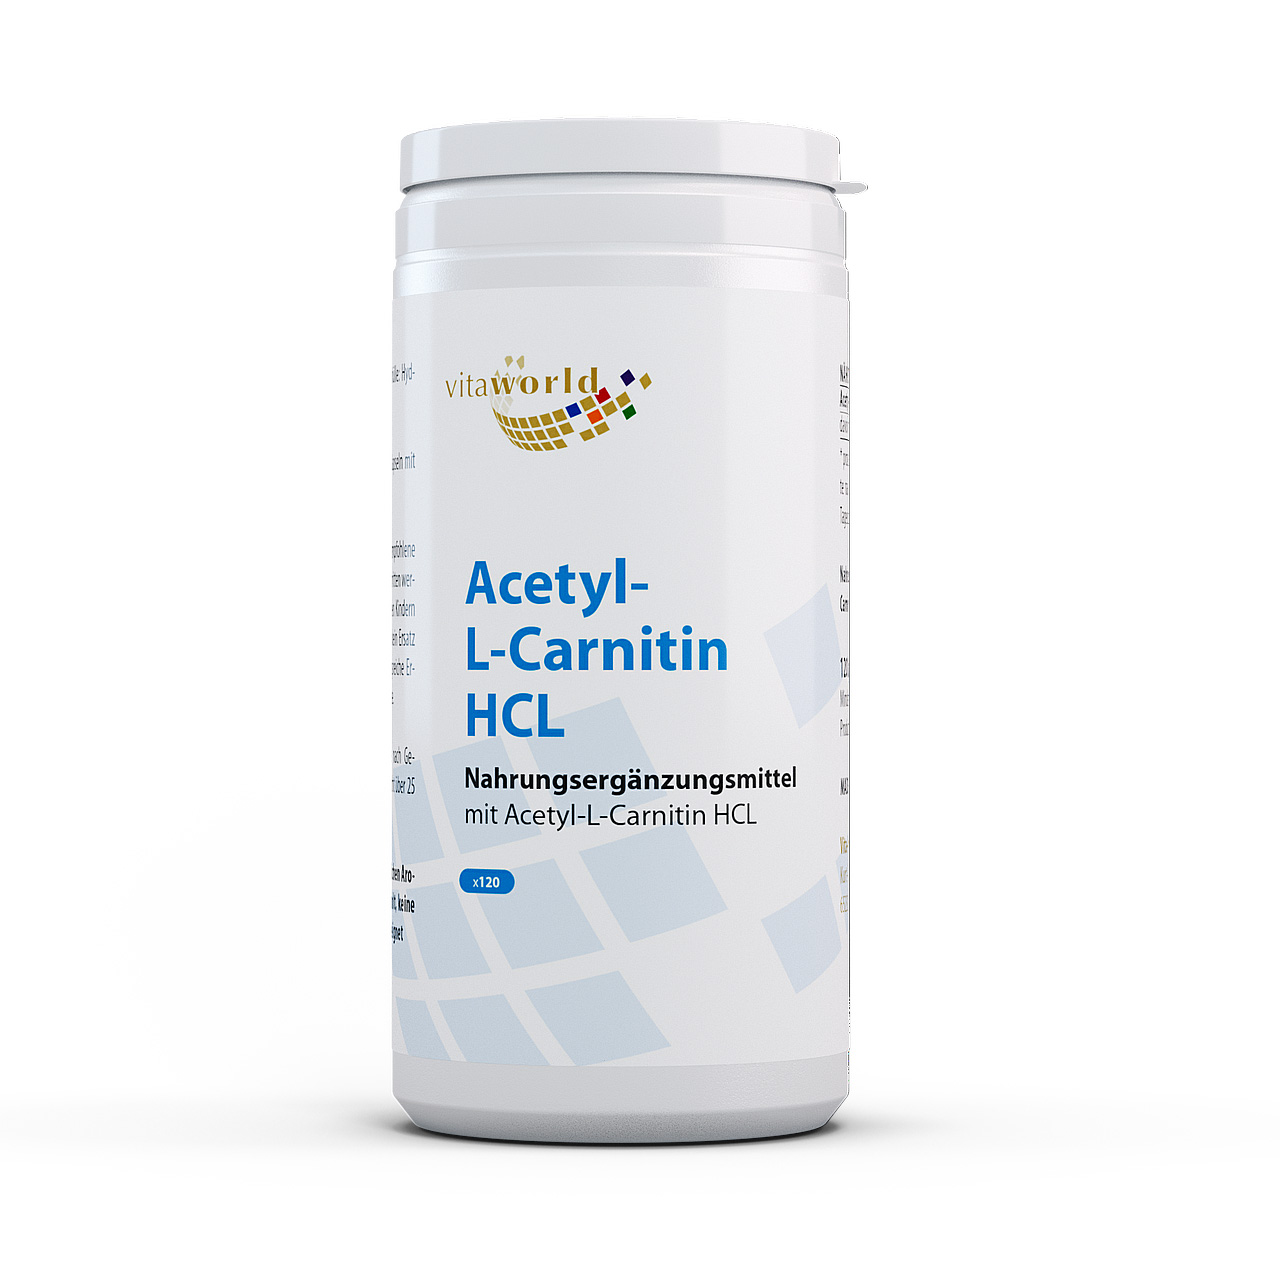 Vita World Acetyl-L-Carnitin HCL | Unterstützt Energie & Kognition - 110 bis 150 Zeichen für optimale Sichtbarkeit